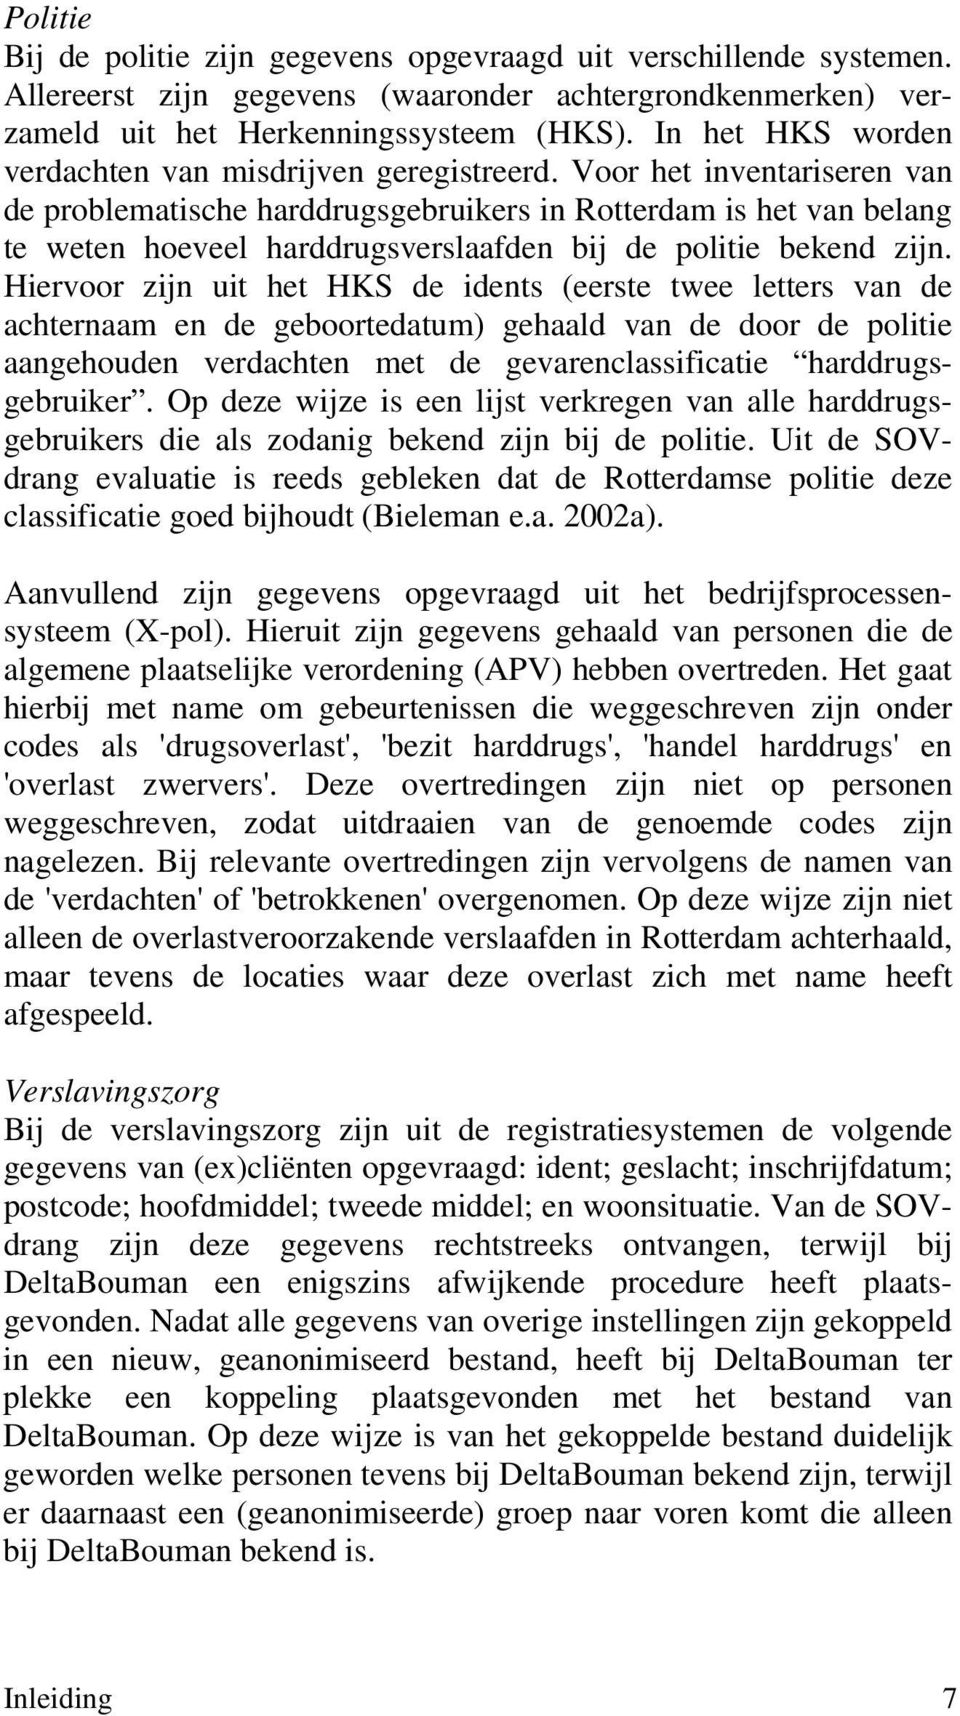 Voor het inventariseren van de problematische harddrugsgebruikers in Rotterdam is het van belang te weten hoeveel harddrugsverslaafden bij de politie bekend zijn.